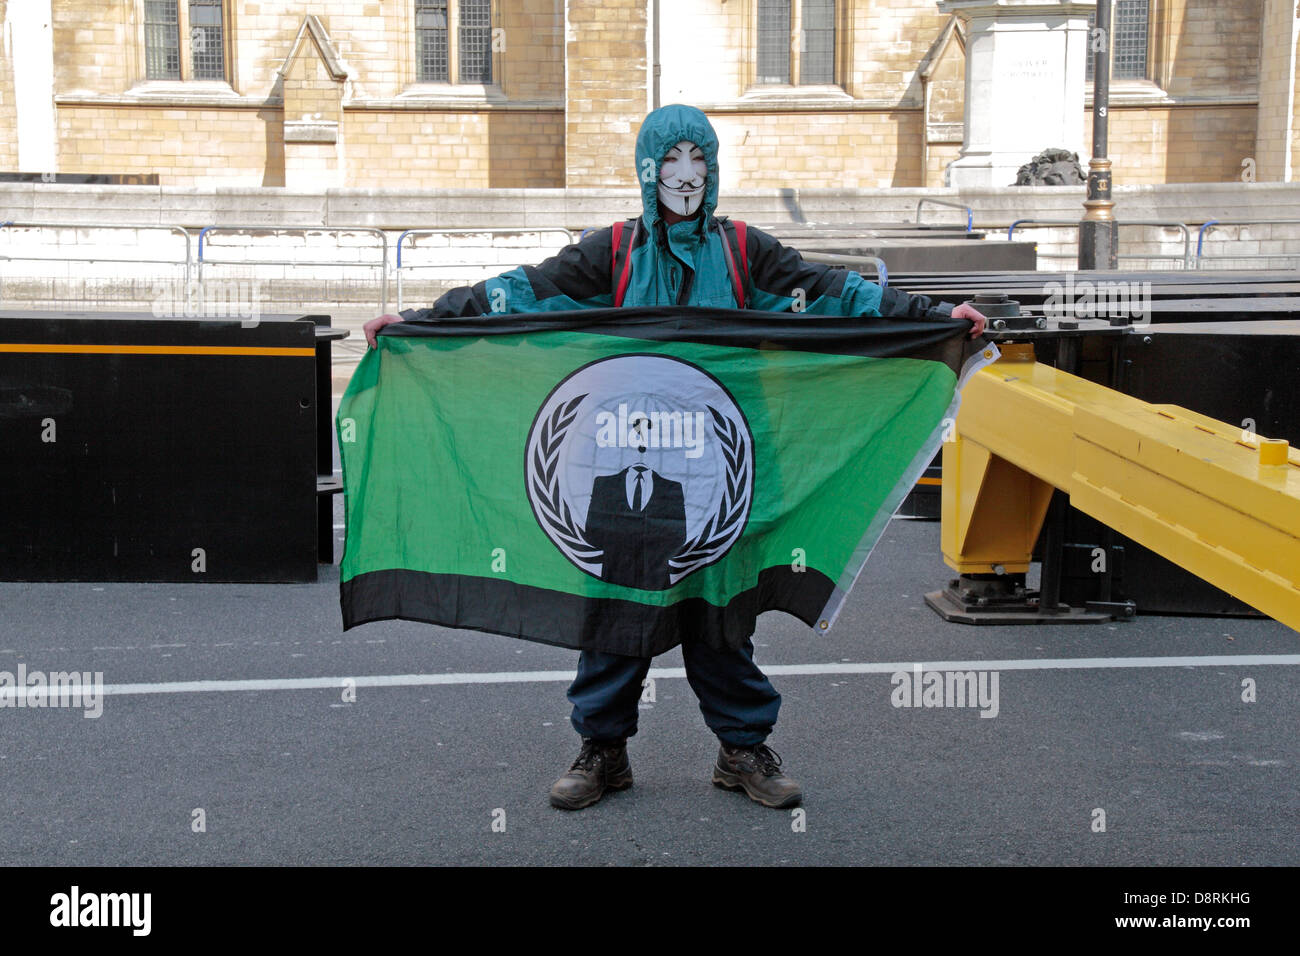 Un manifestant anonyme tenant un drapeau vert, à l'extérieur de l'Anonyme Maisons du Parlement, Londres, Royaume-Uni. Mai 2013 Banque D'Images